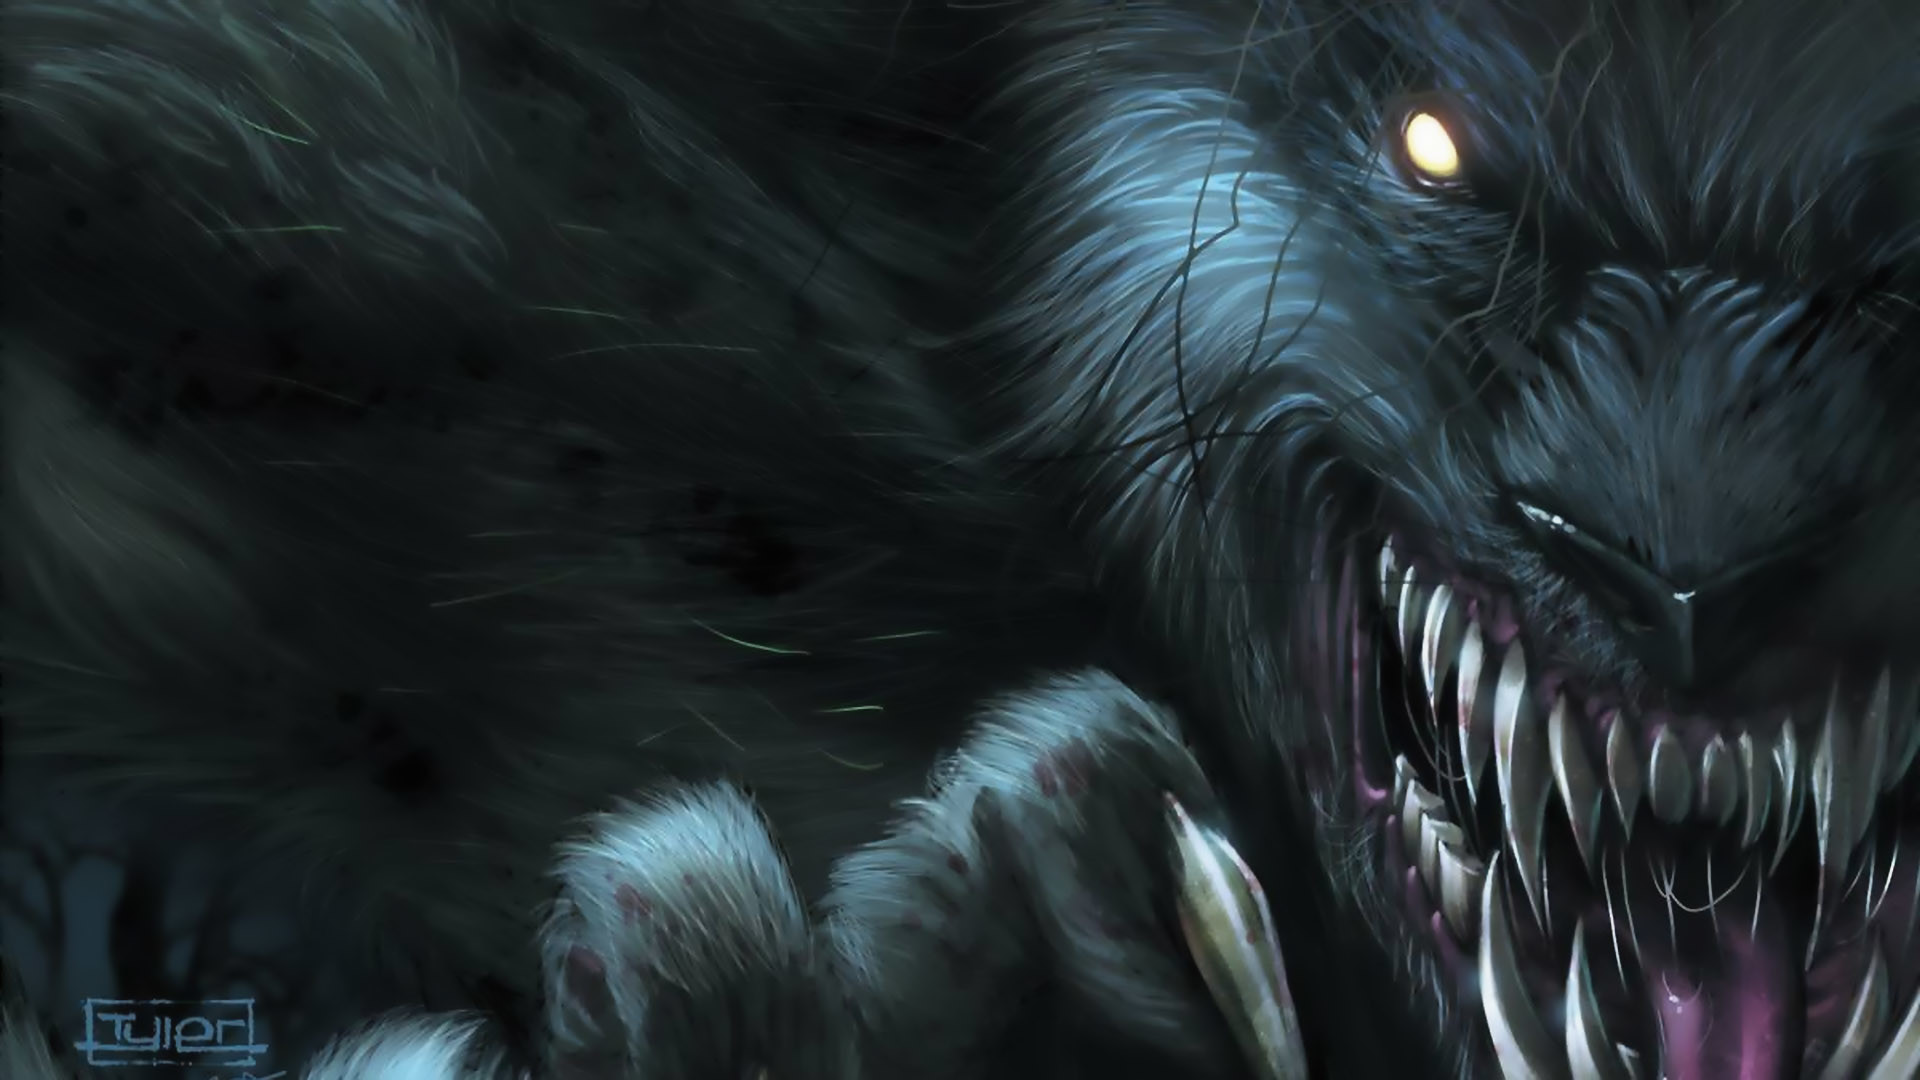 1920x1080 images of werewolves Werewolf HD Wallpaper Background For | HD Wallpapers |  Pinterest | Wallpaper backgrounds, Hd wallpaper and Werewolves